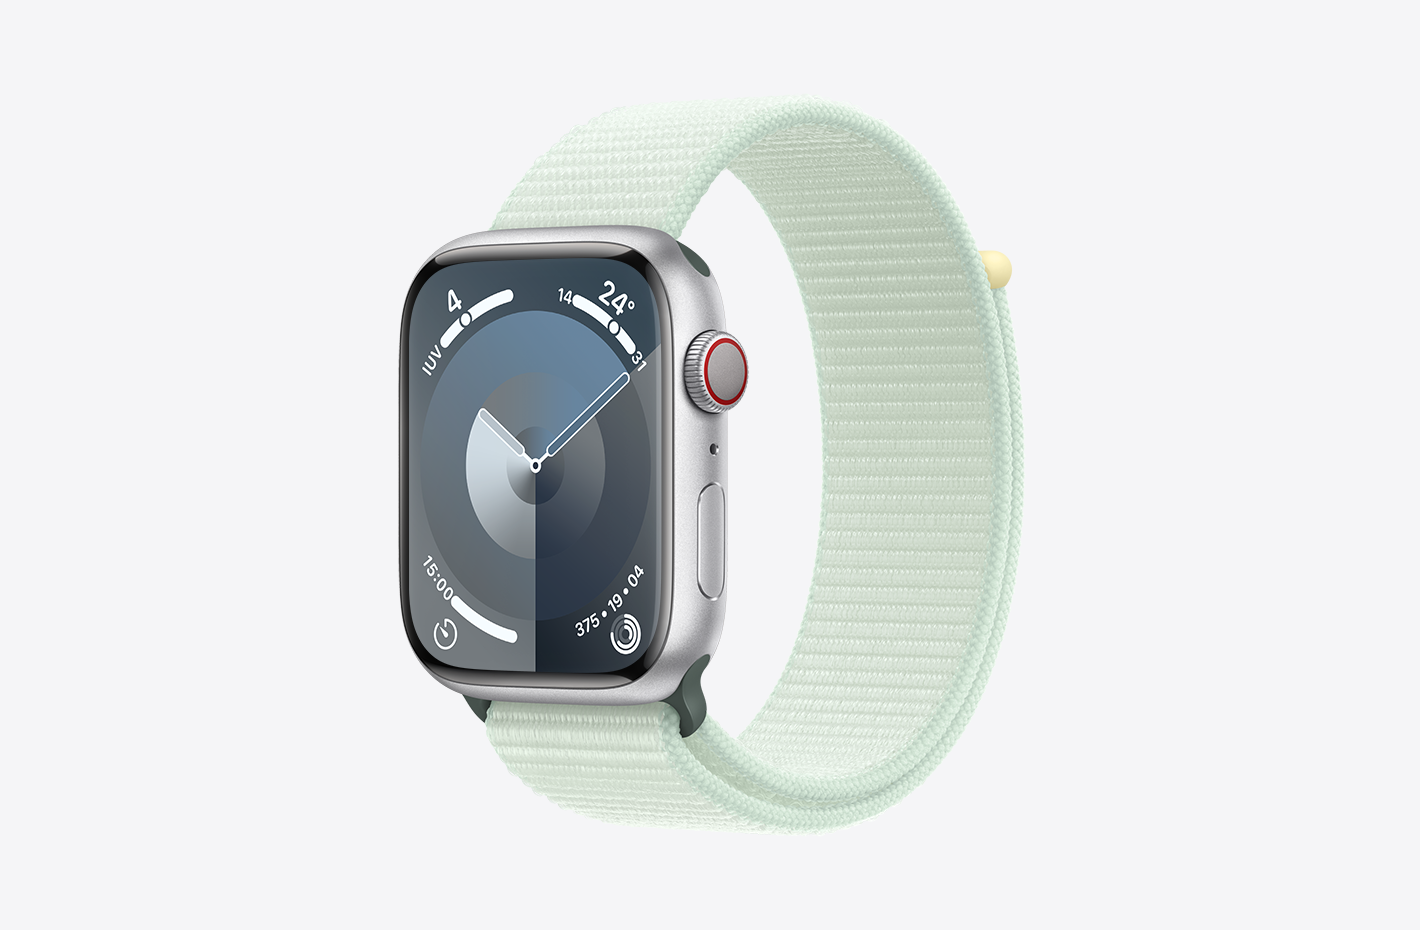 Imagen en ángulo de un Apple Watch con caja de aluminio color plata con acabado mate y correa loop deportiva color menta claro (verde), con cierre adhesivo ajustable y tejido de nylon de doble capa